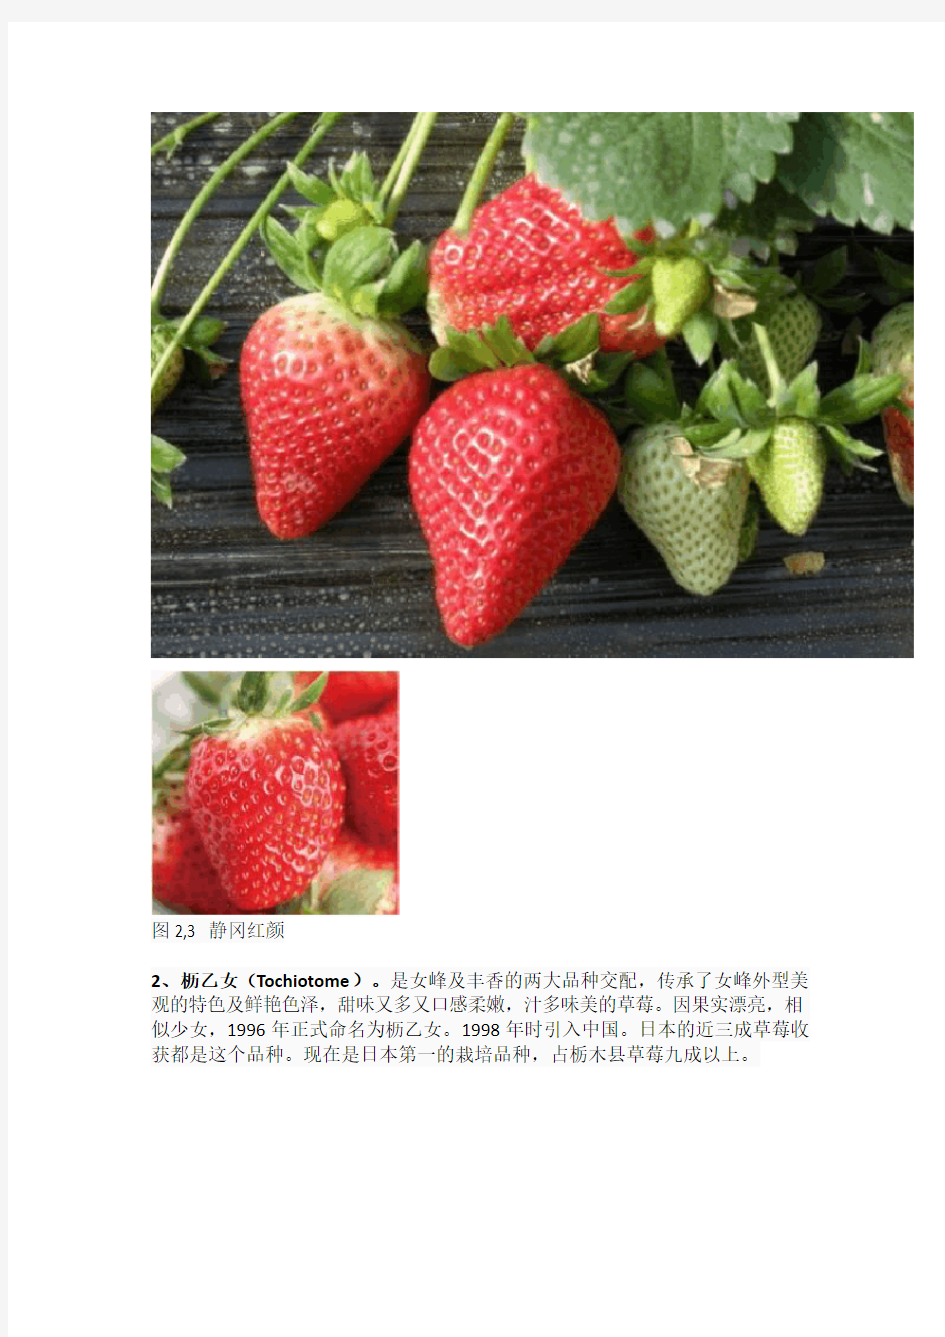 世界草莓品种2000多种